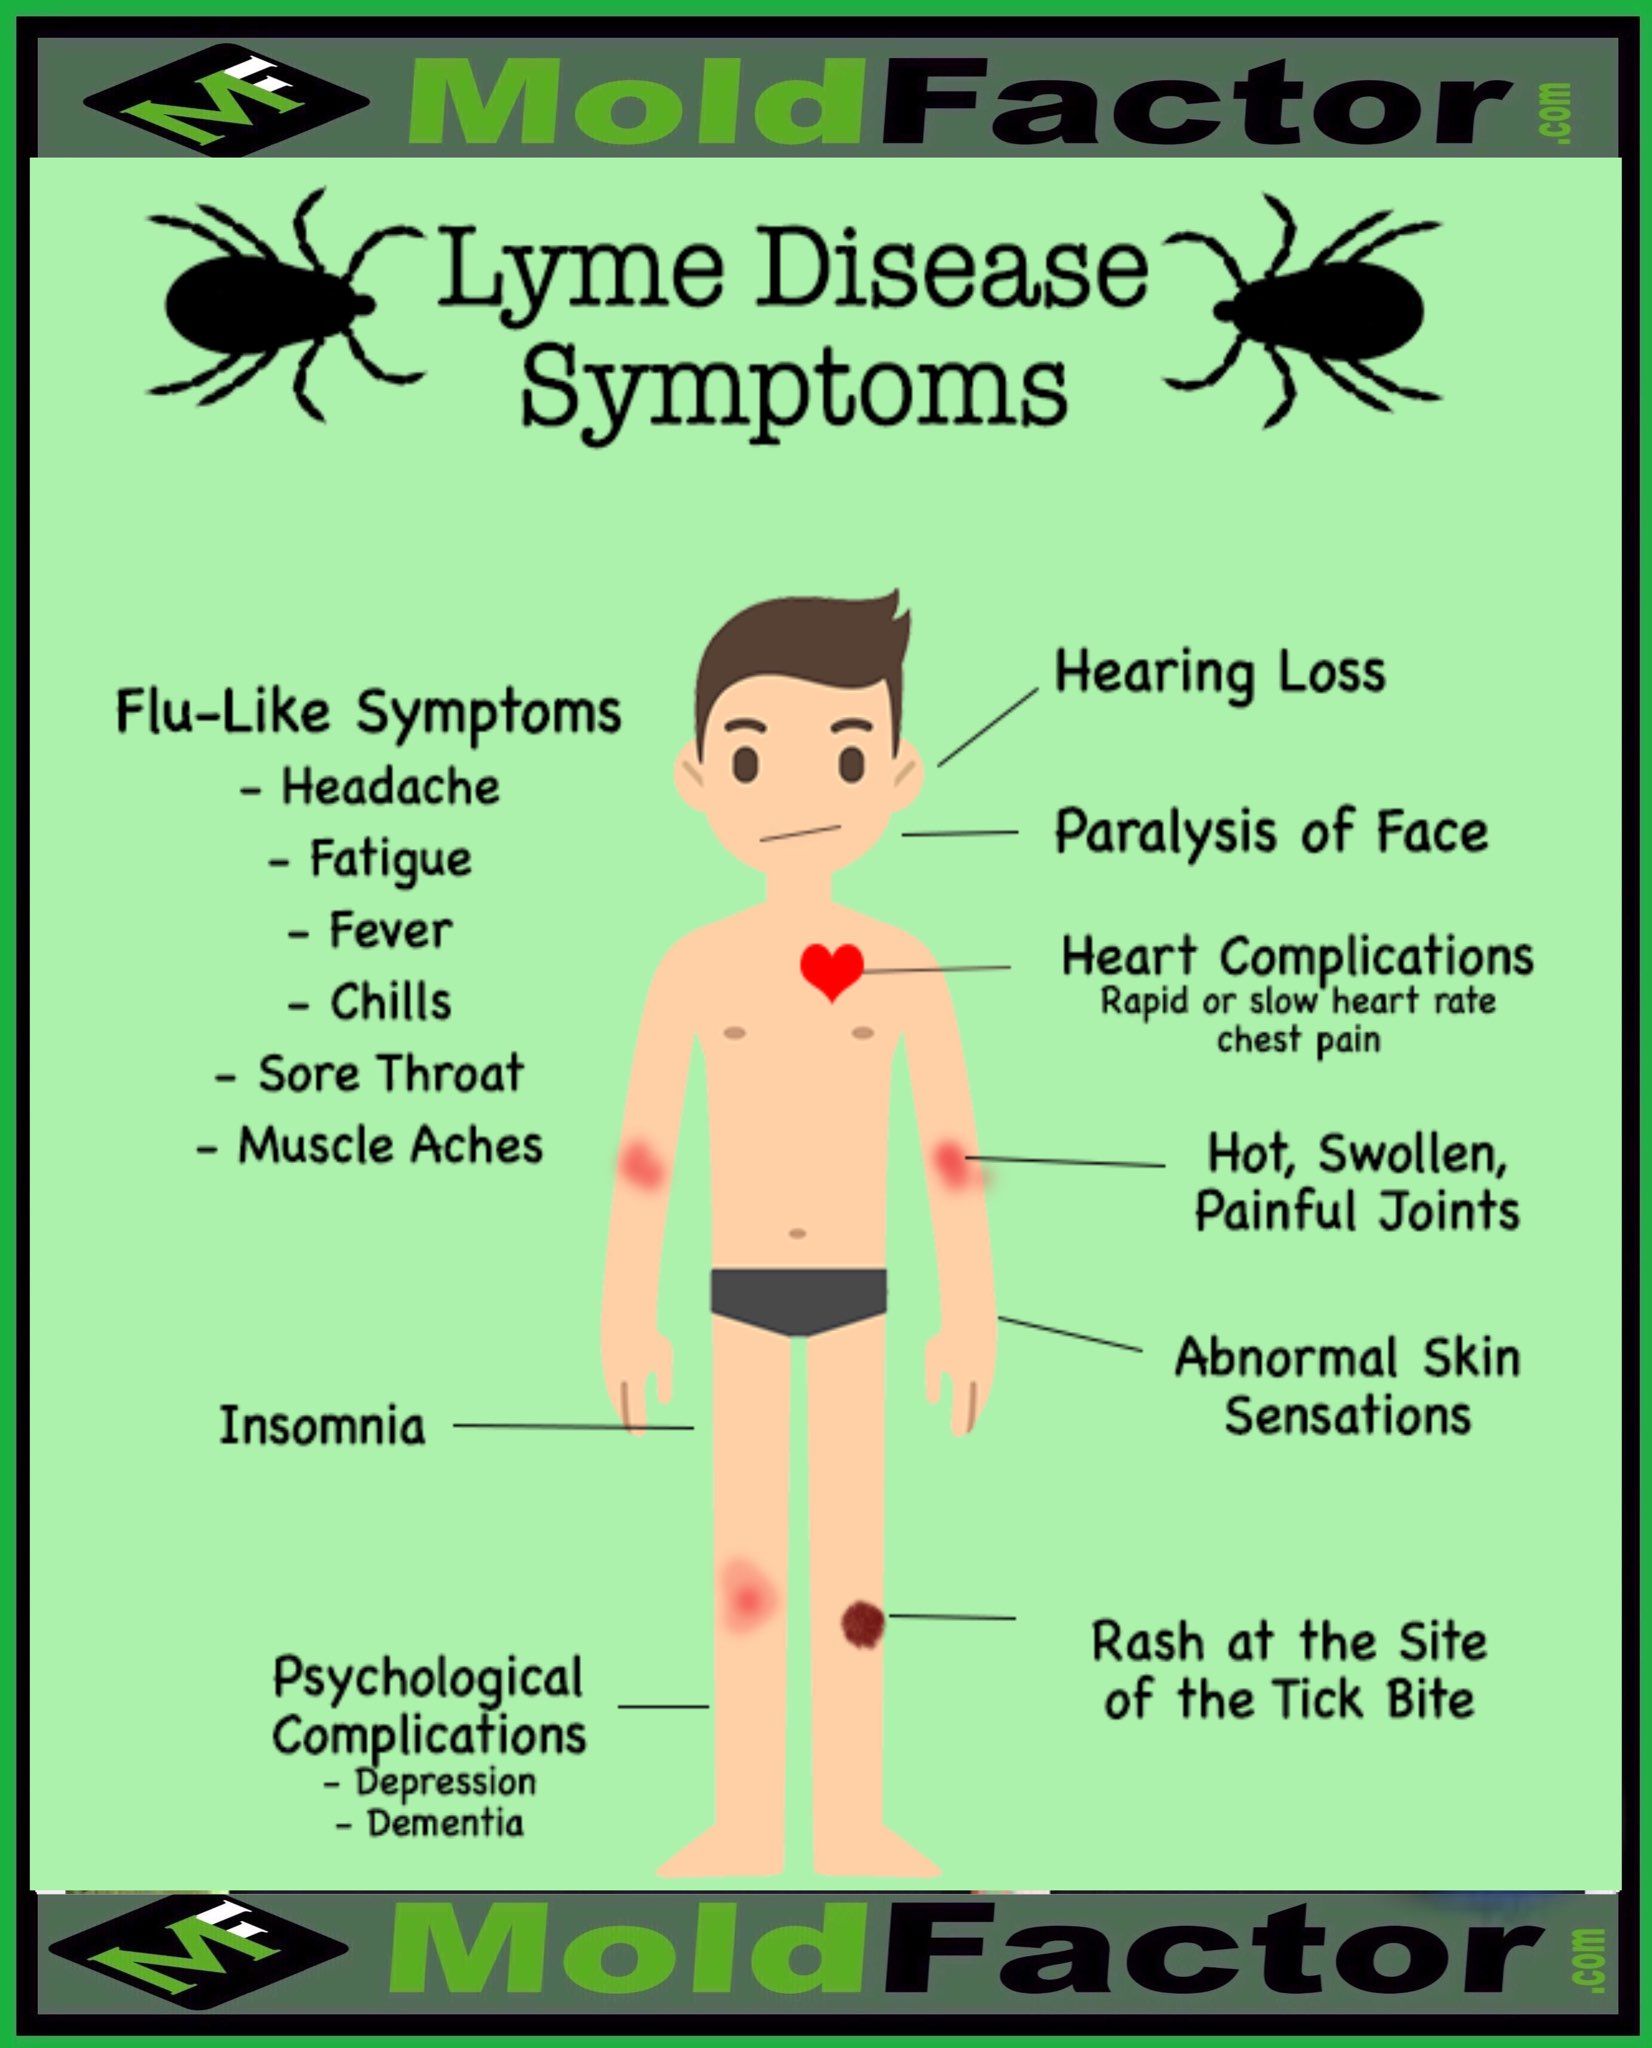 Lyme Disease Symptoms in 2020